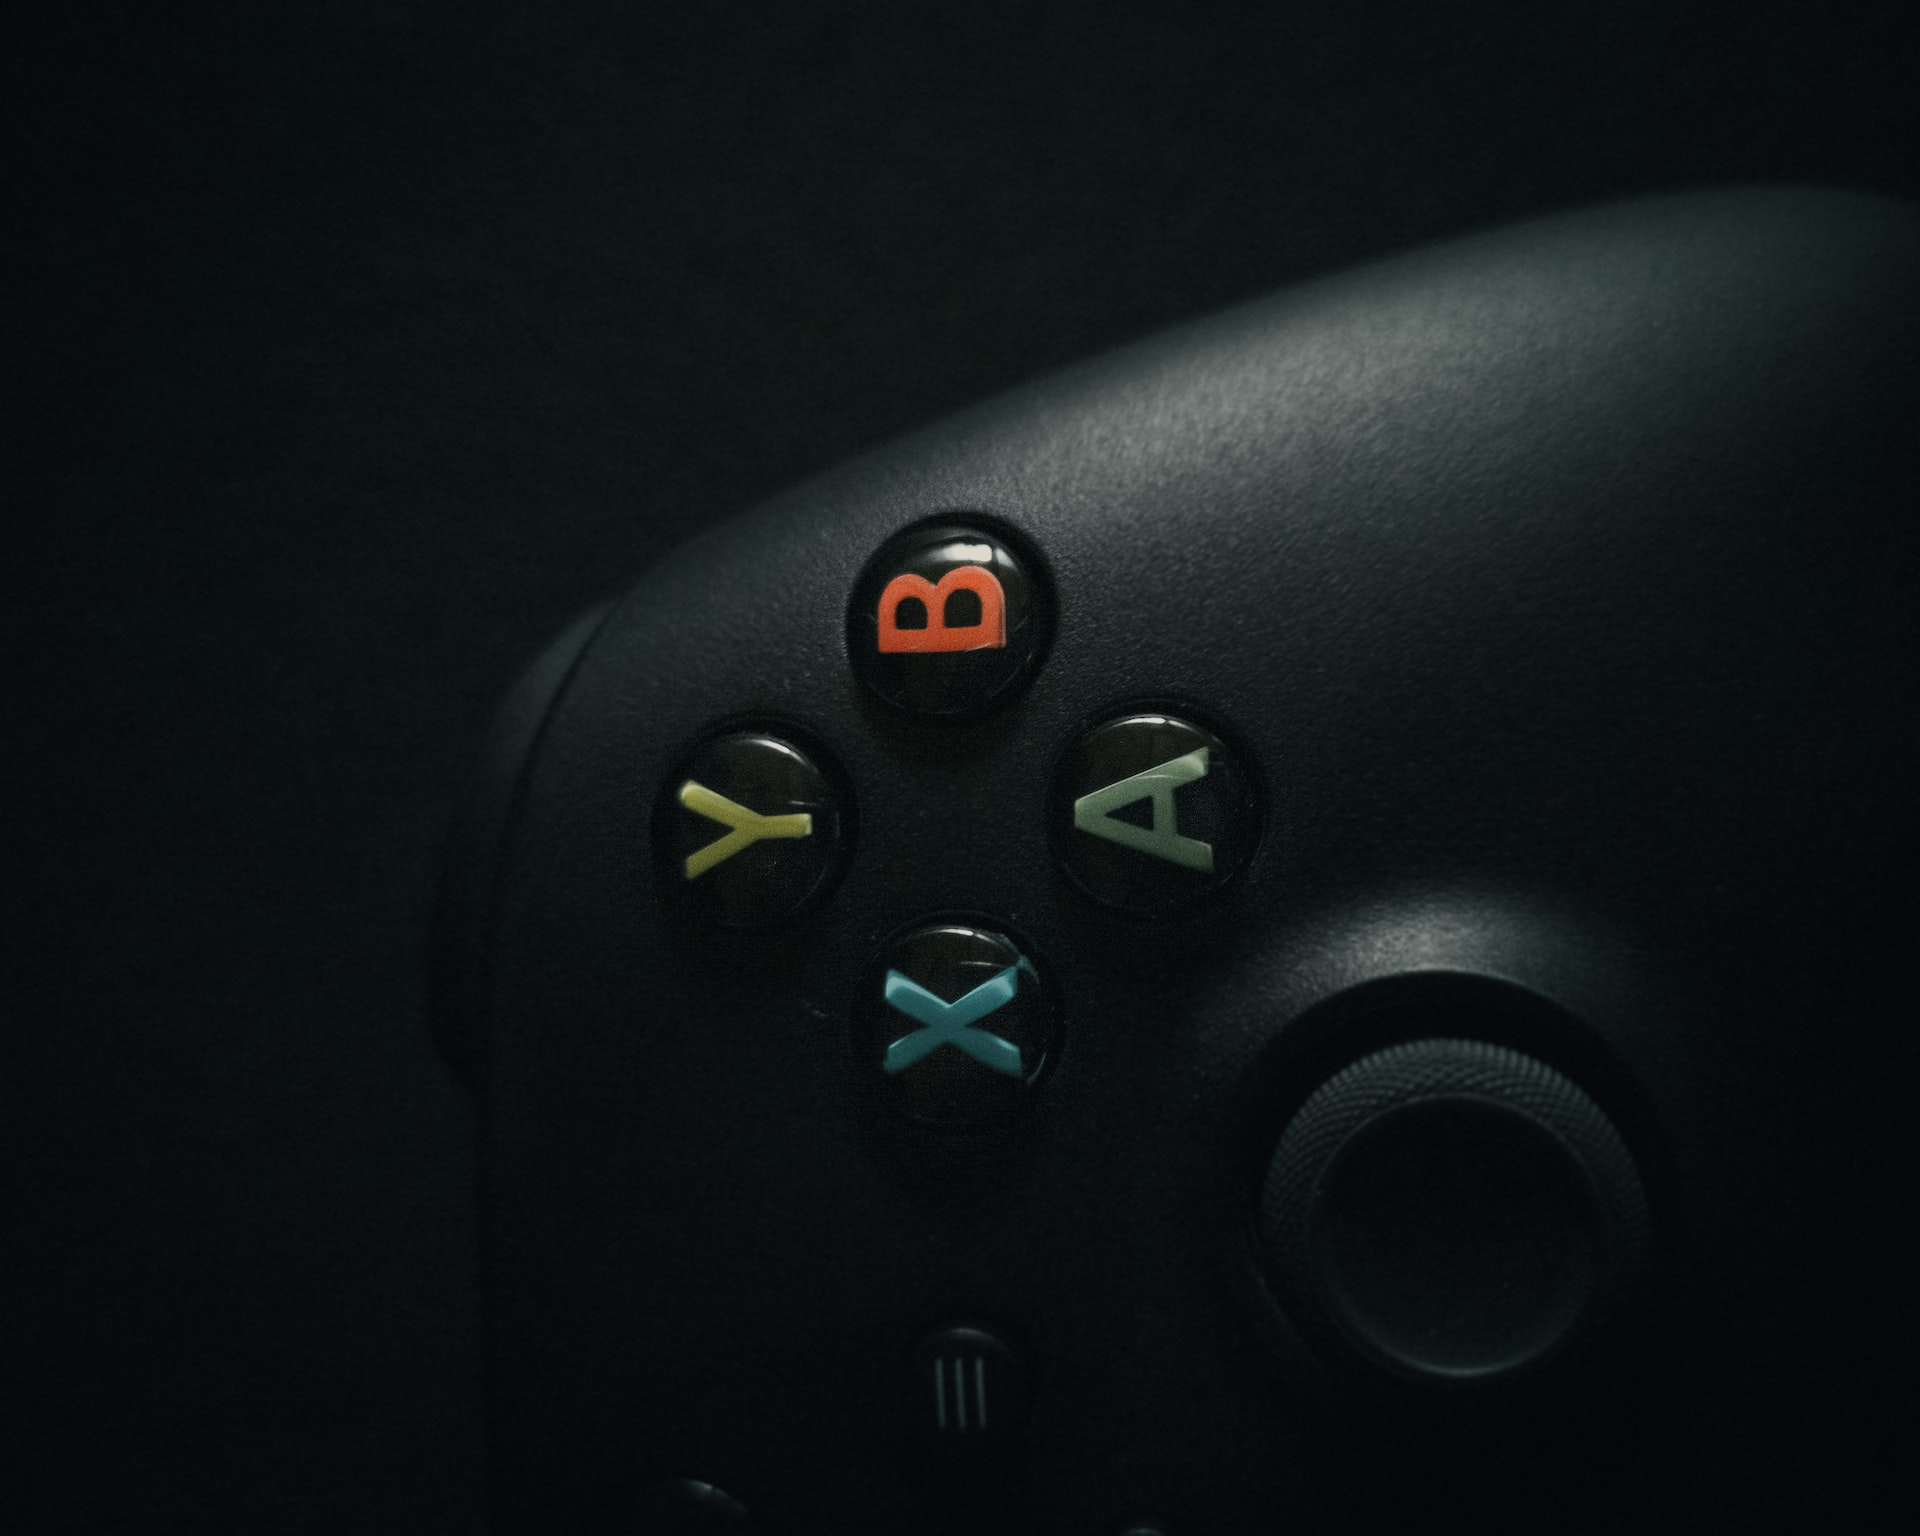 Imagem mostra parte do controle do Xbox One, em matéria que fala sobre o crescimento do mercado de jogos